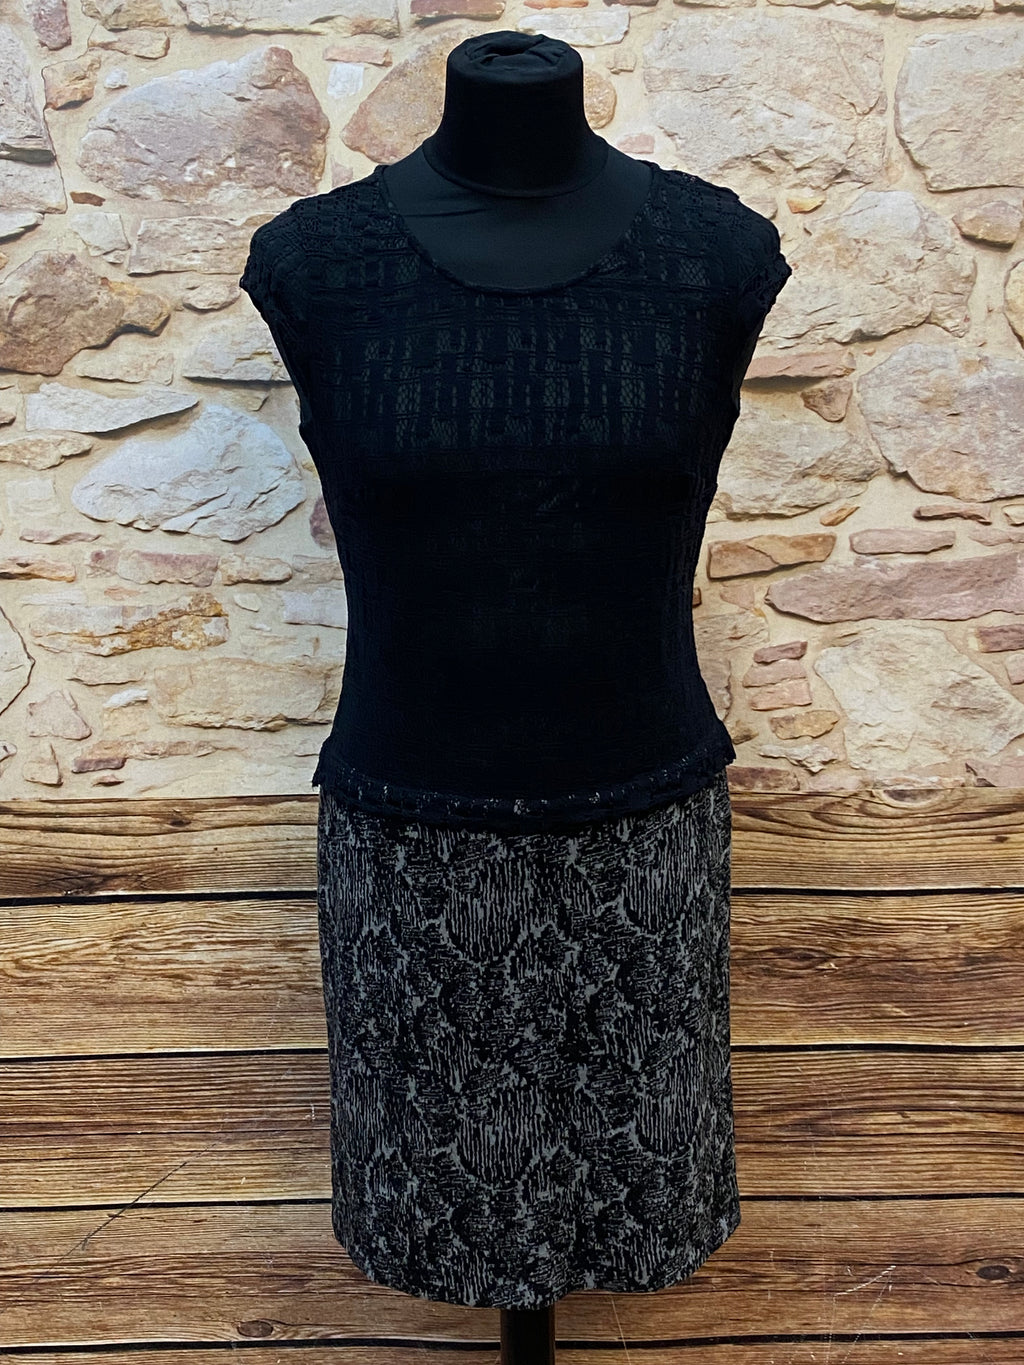 Schwarz/weißes  Kleid im 40er Jahre Stil, Vintage tiefe Taille Gr.40